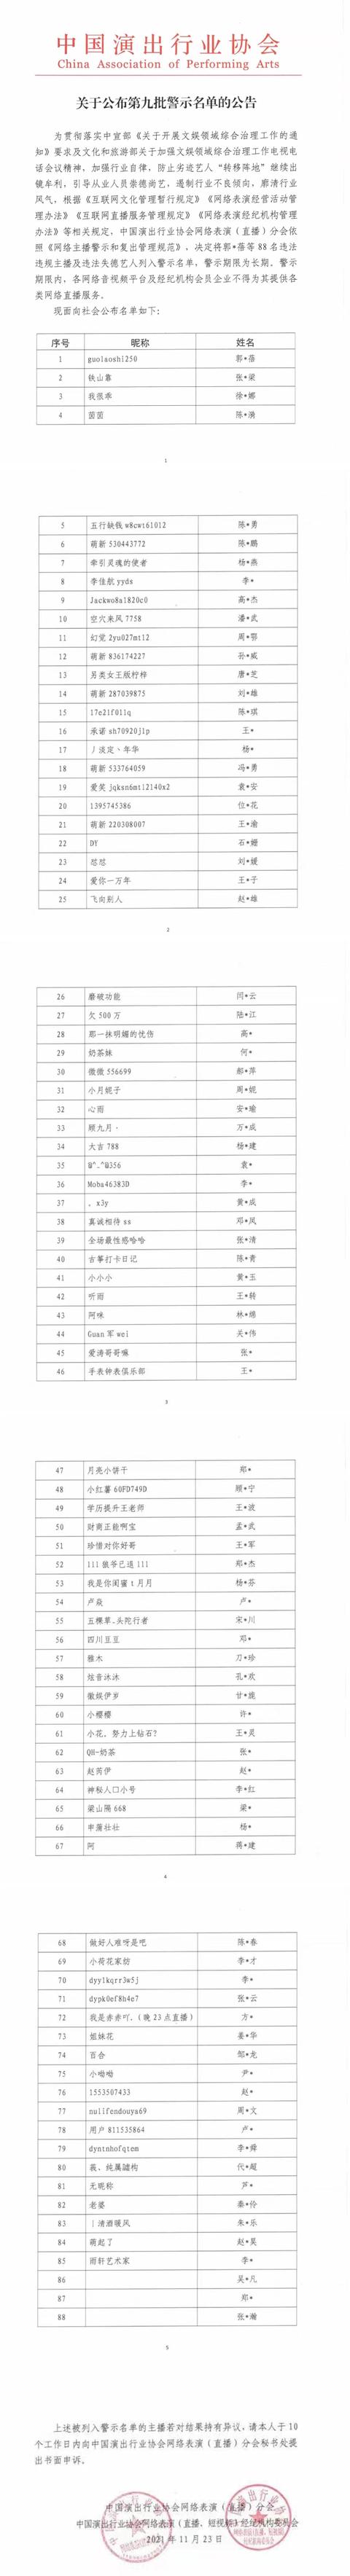 第九批网络主播警示名单公布 吴亦凡、郑爽、张哲瀚等88人“上榜”